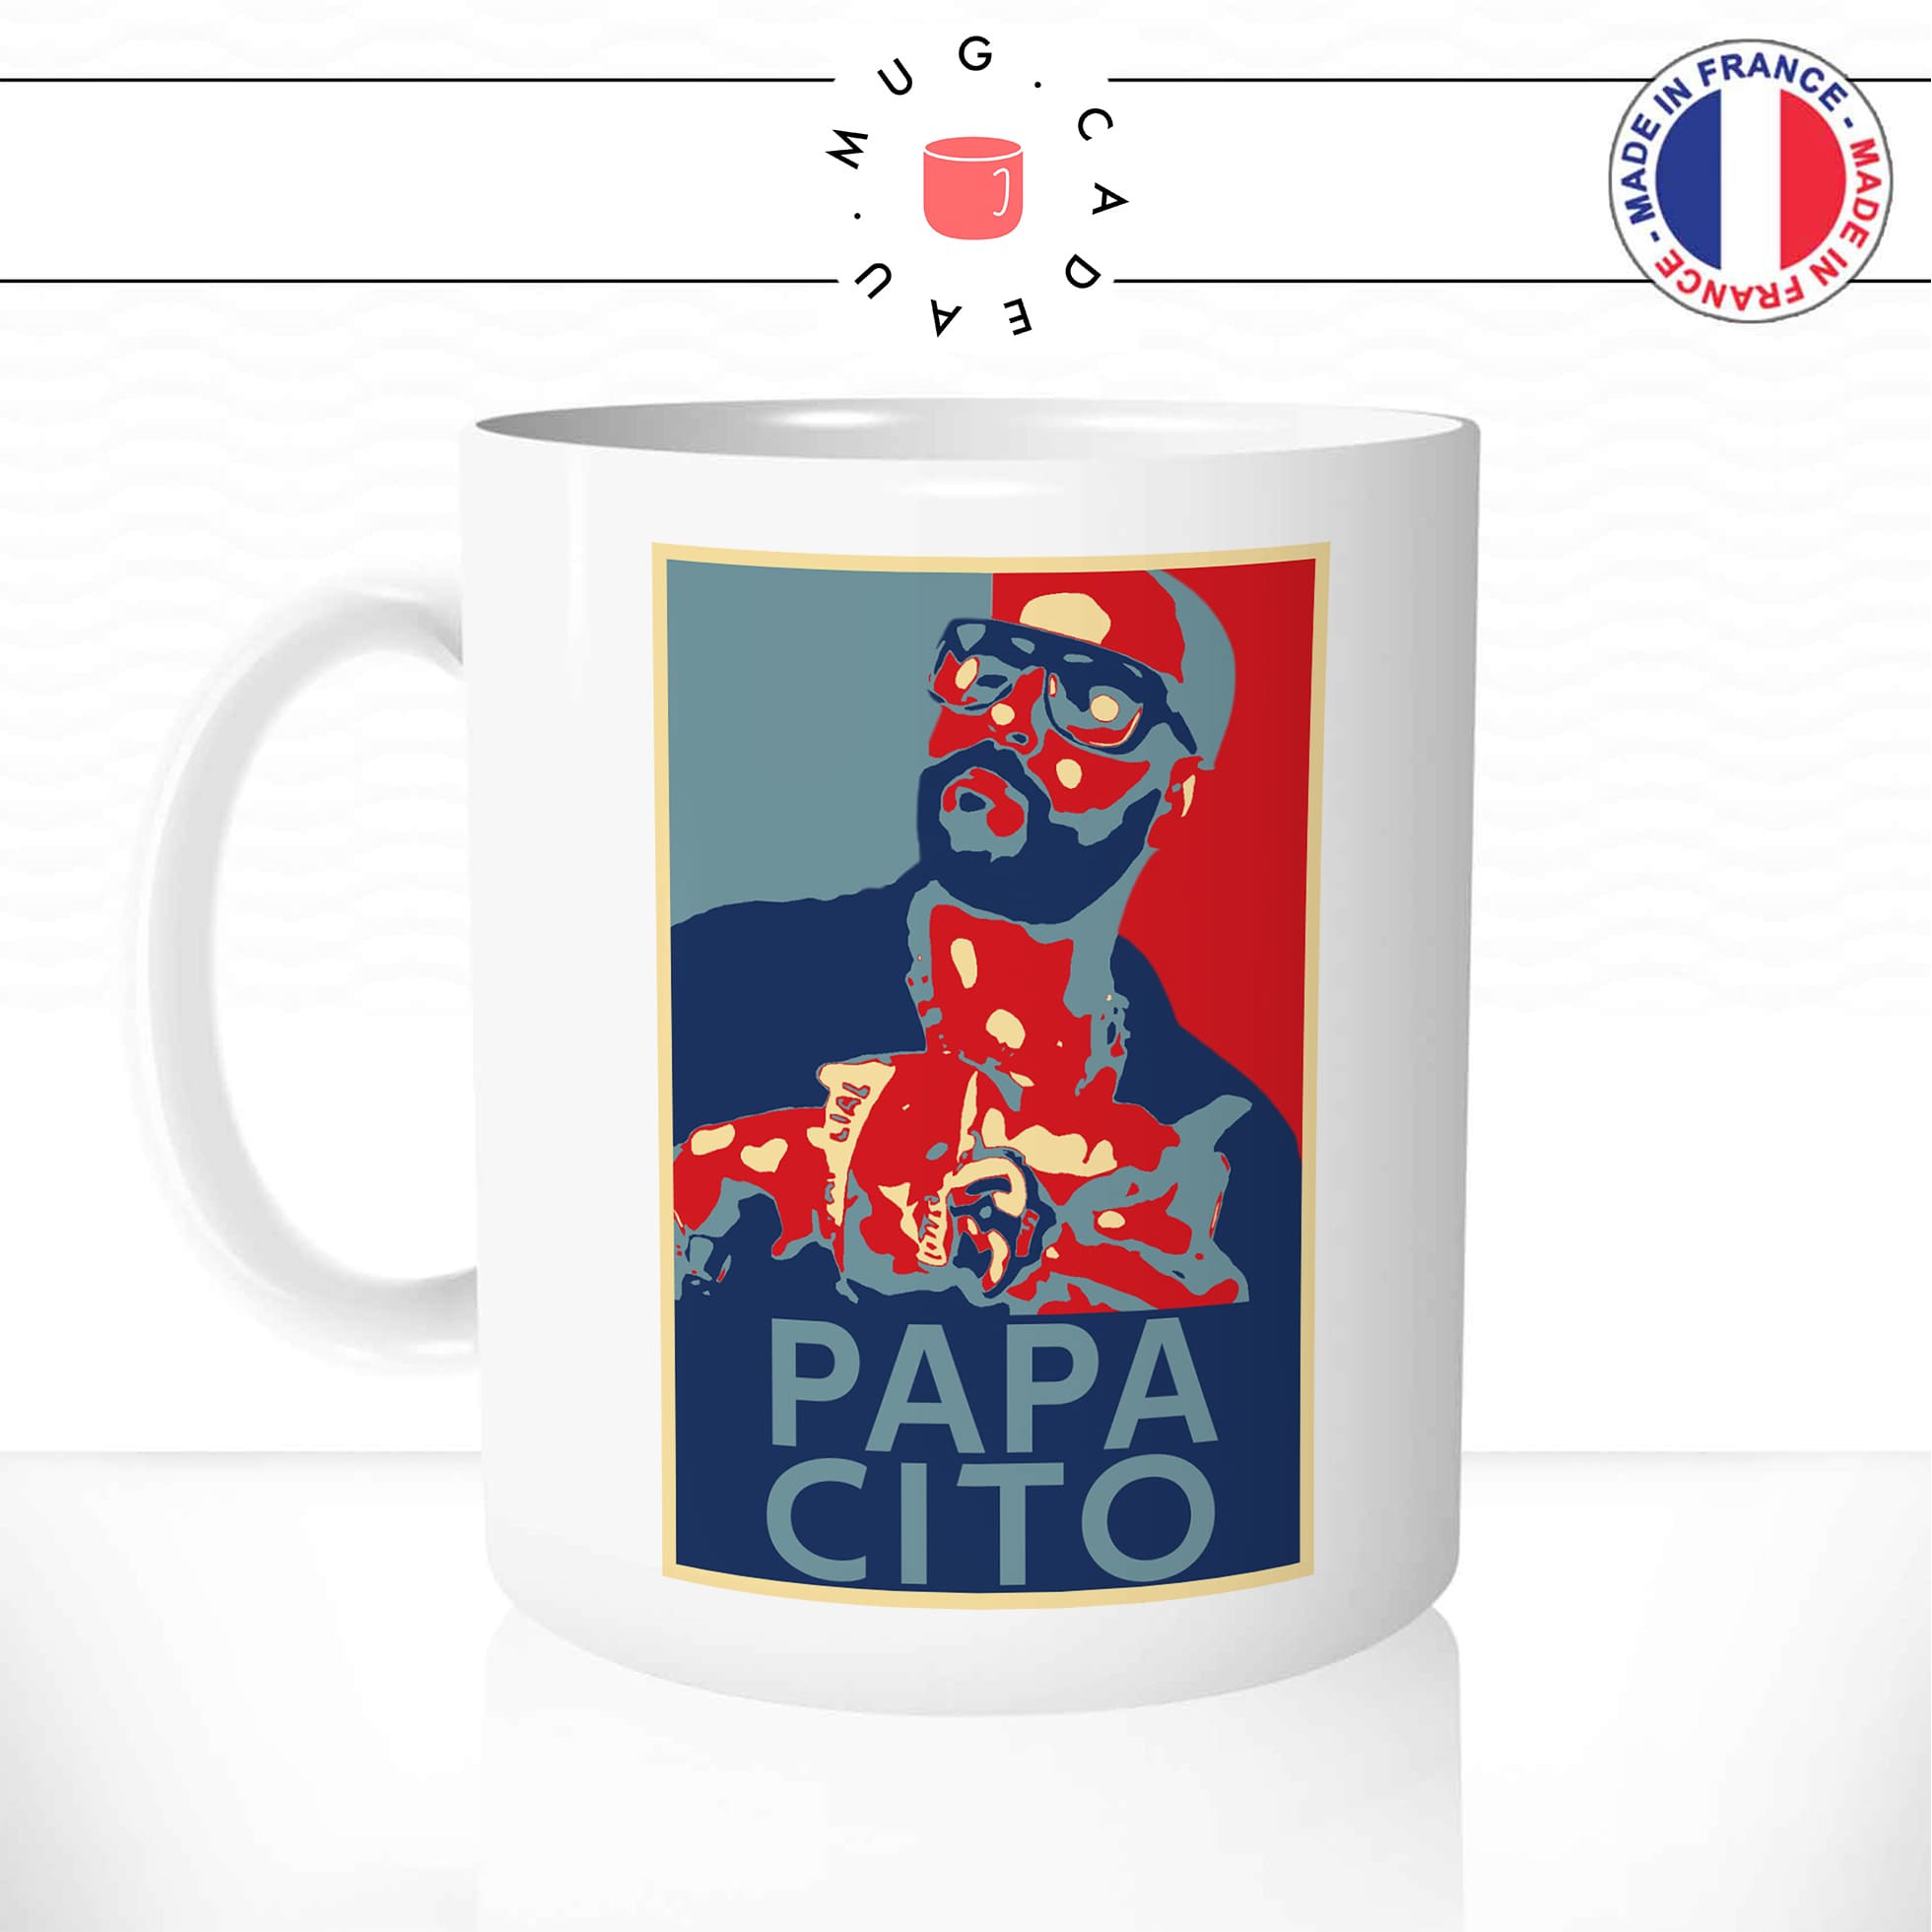 mug-tasse-blanc-simple-papacito-parodie-chips-youtubeur-humour-affiche-obama-drole-idée-cadeau-originale-café-thé